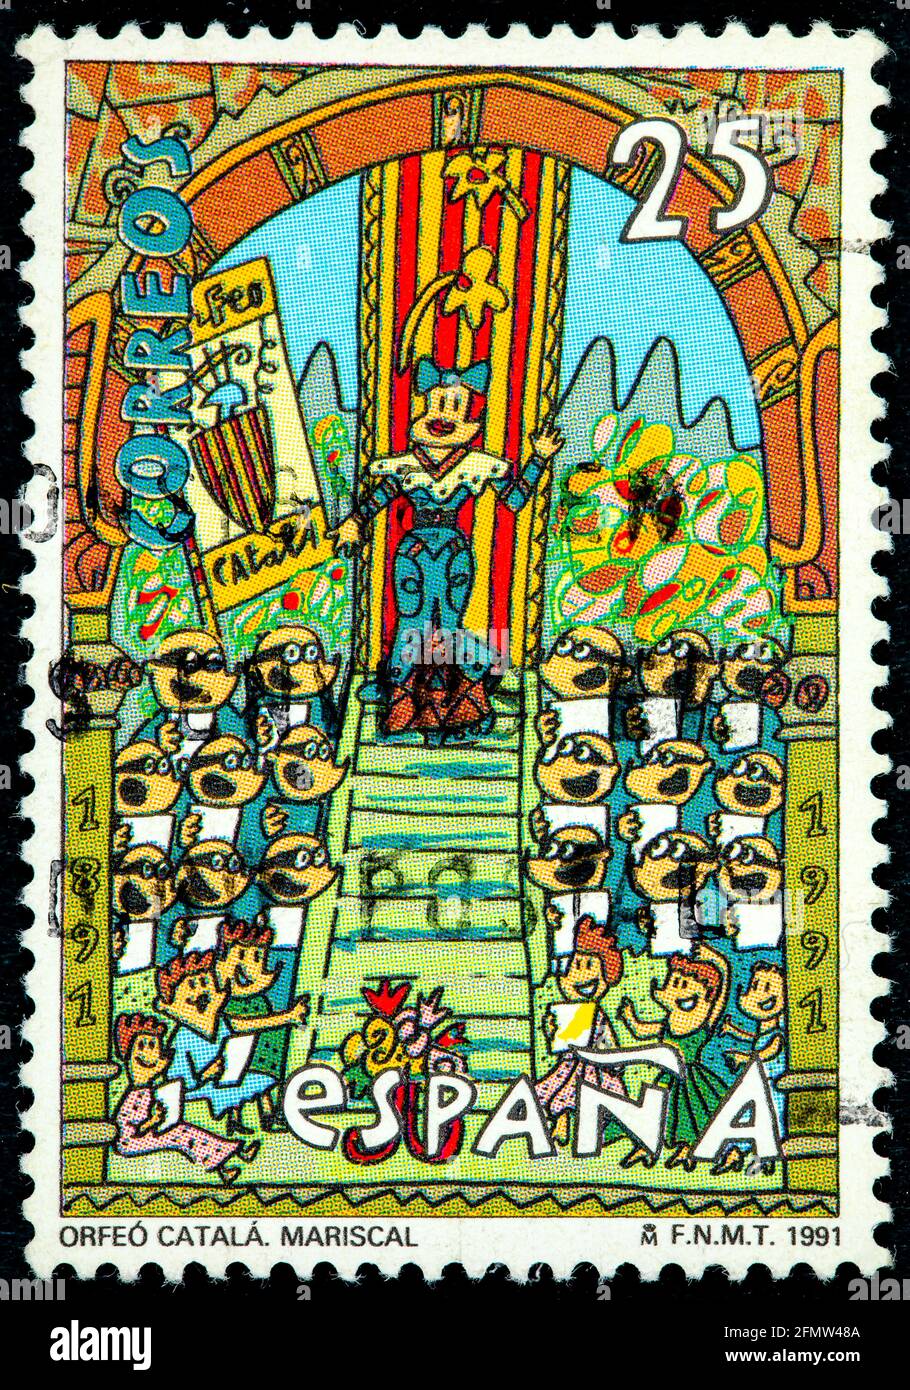 ESPAGNE - VERS 1991: Un timbre imprimé en Espagne montre Orfeo Catala conçu par Javier Errando Mariscal designer multidisciplinaire espagnol, vers 1991 Banque D'Images